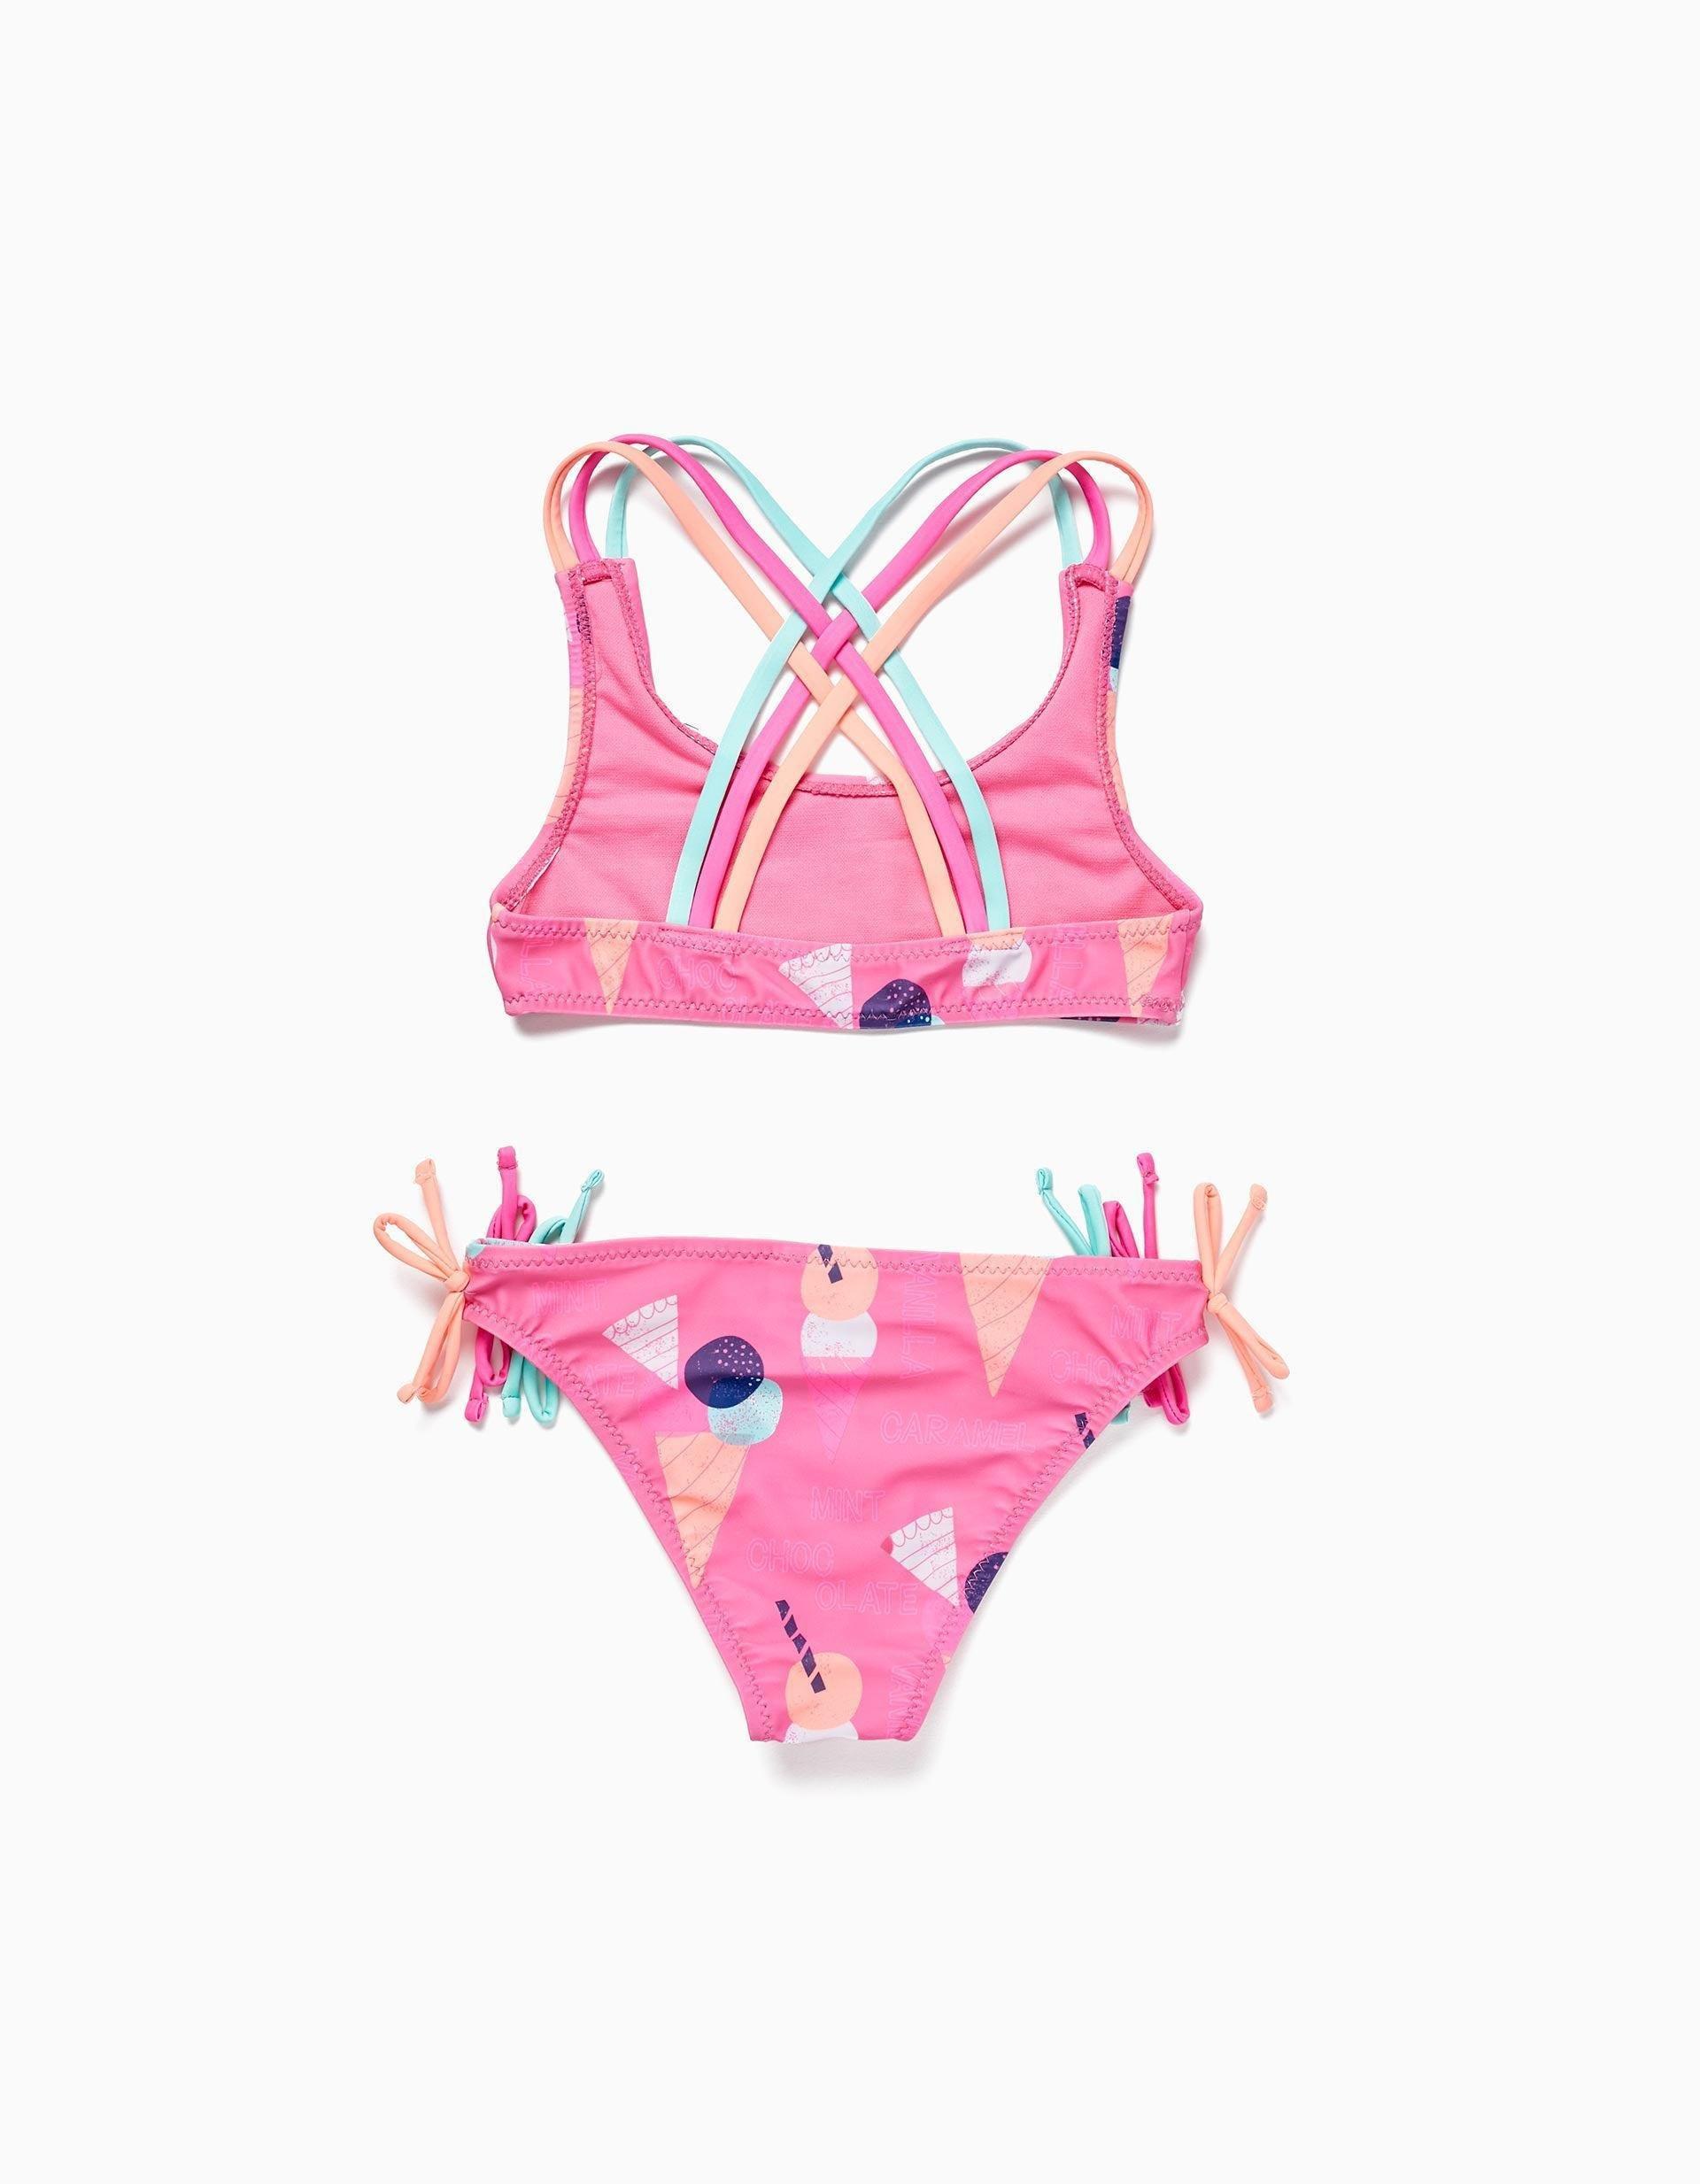 Gant - Pink Printed Swimsuit, Kids Girls